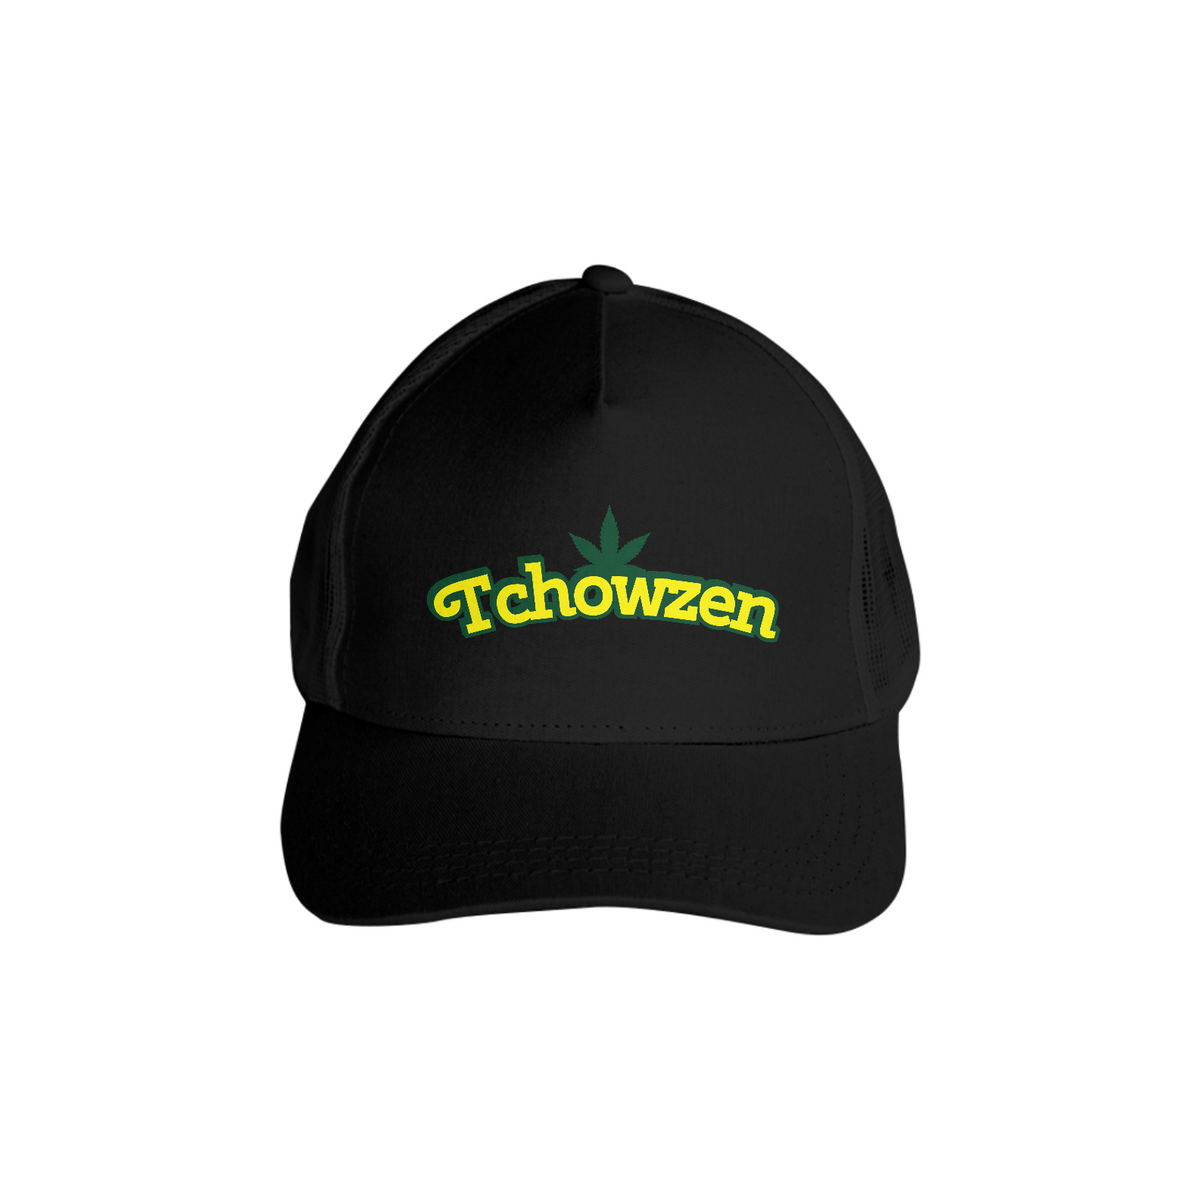 Nome do produto: Tchowzen Original